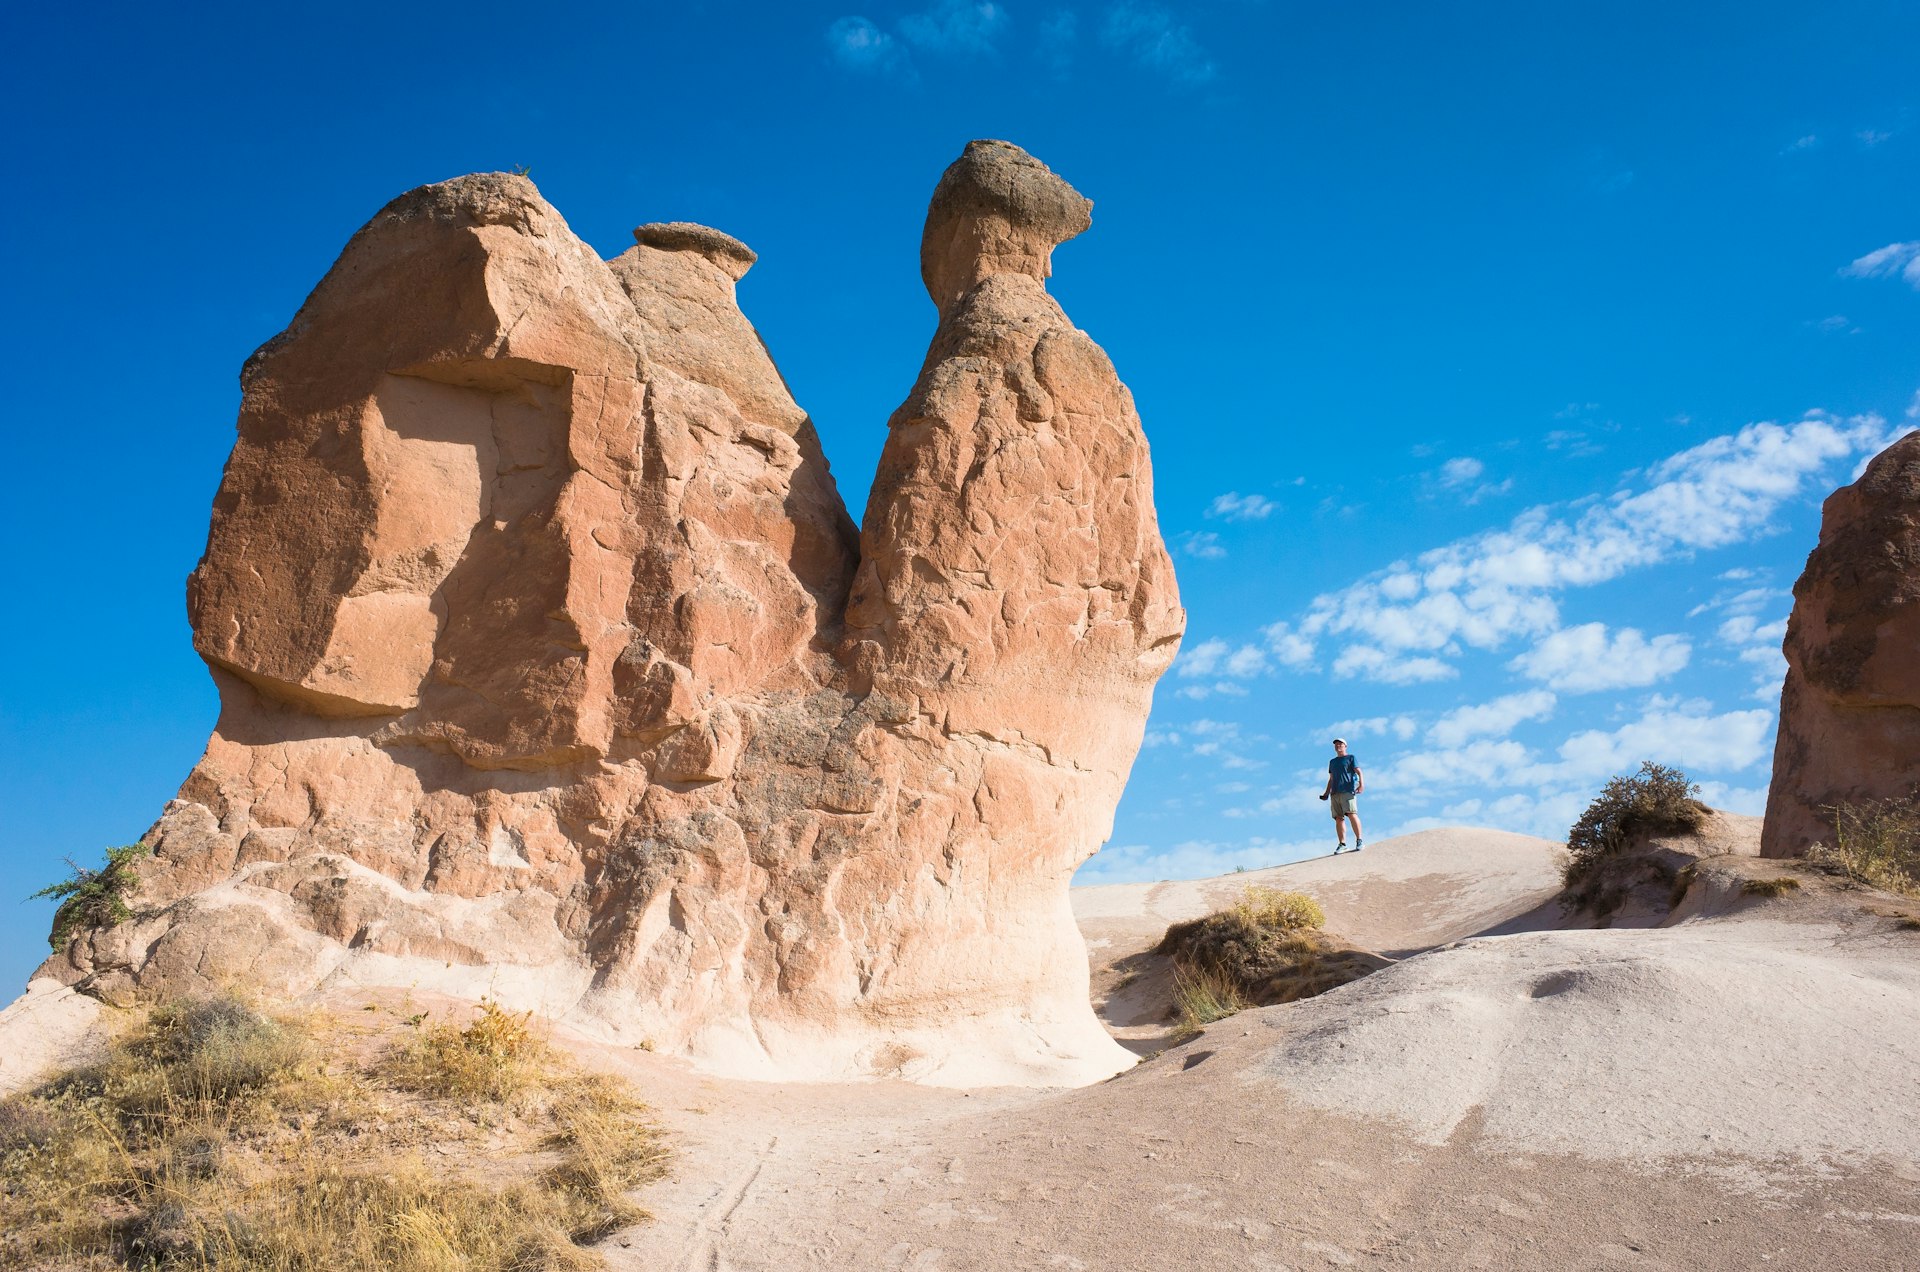 Um único turista fica perto de uma enorme formação rochosa em forma de camelo